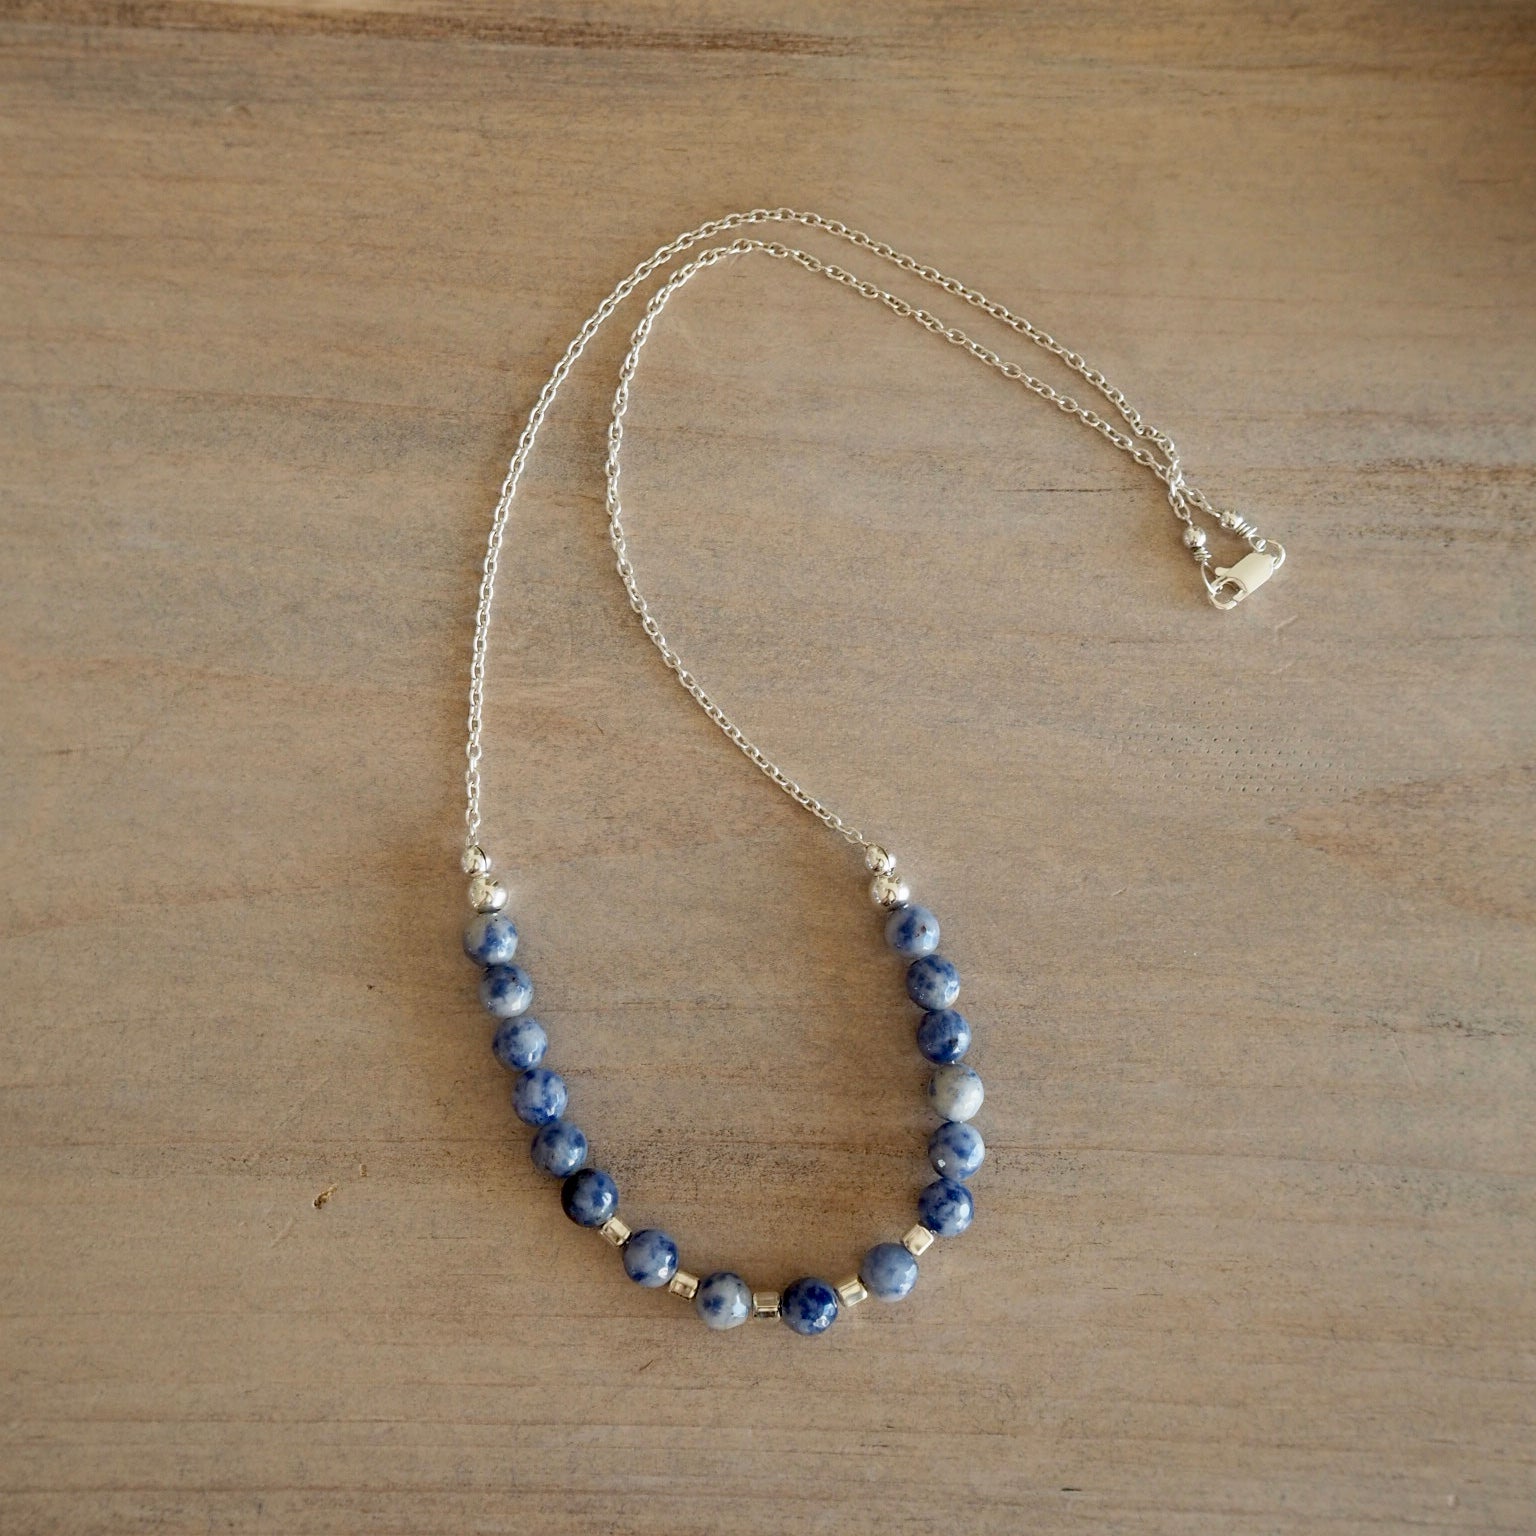 Blue Jasper Gemstone Necklace made in Canada